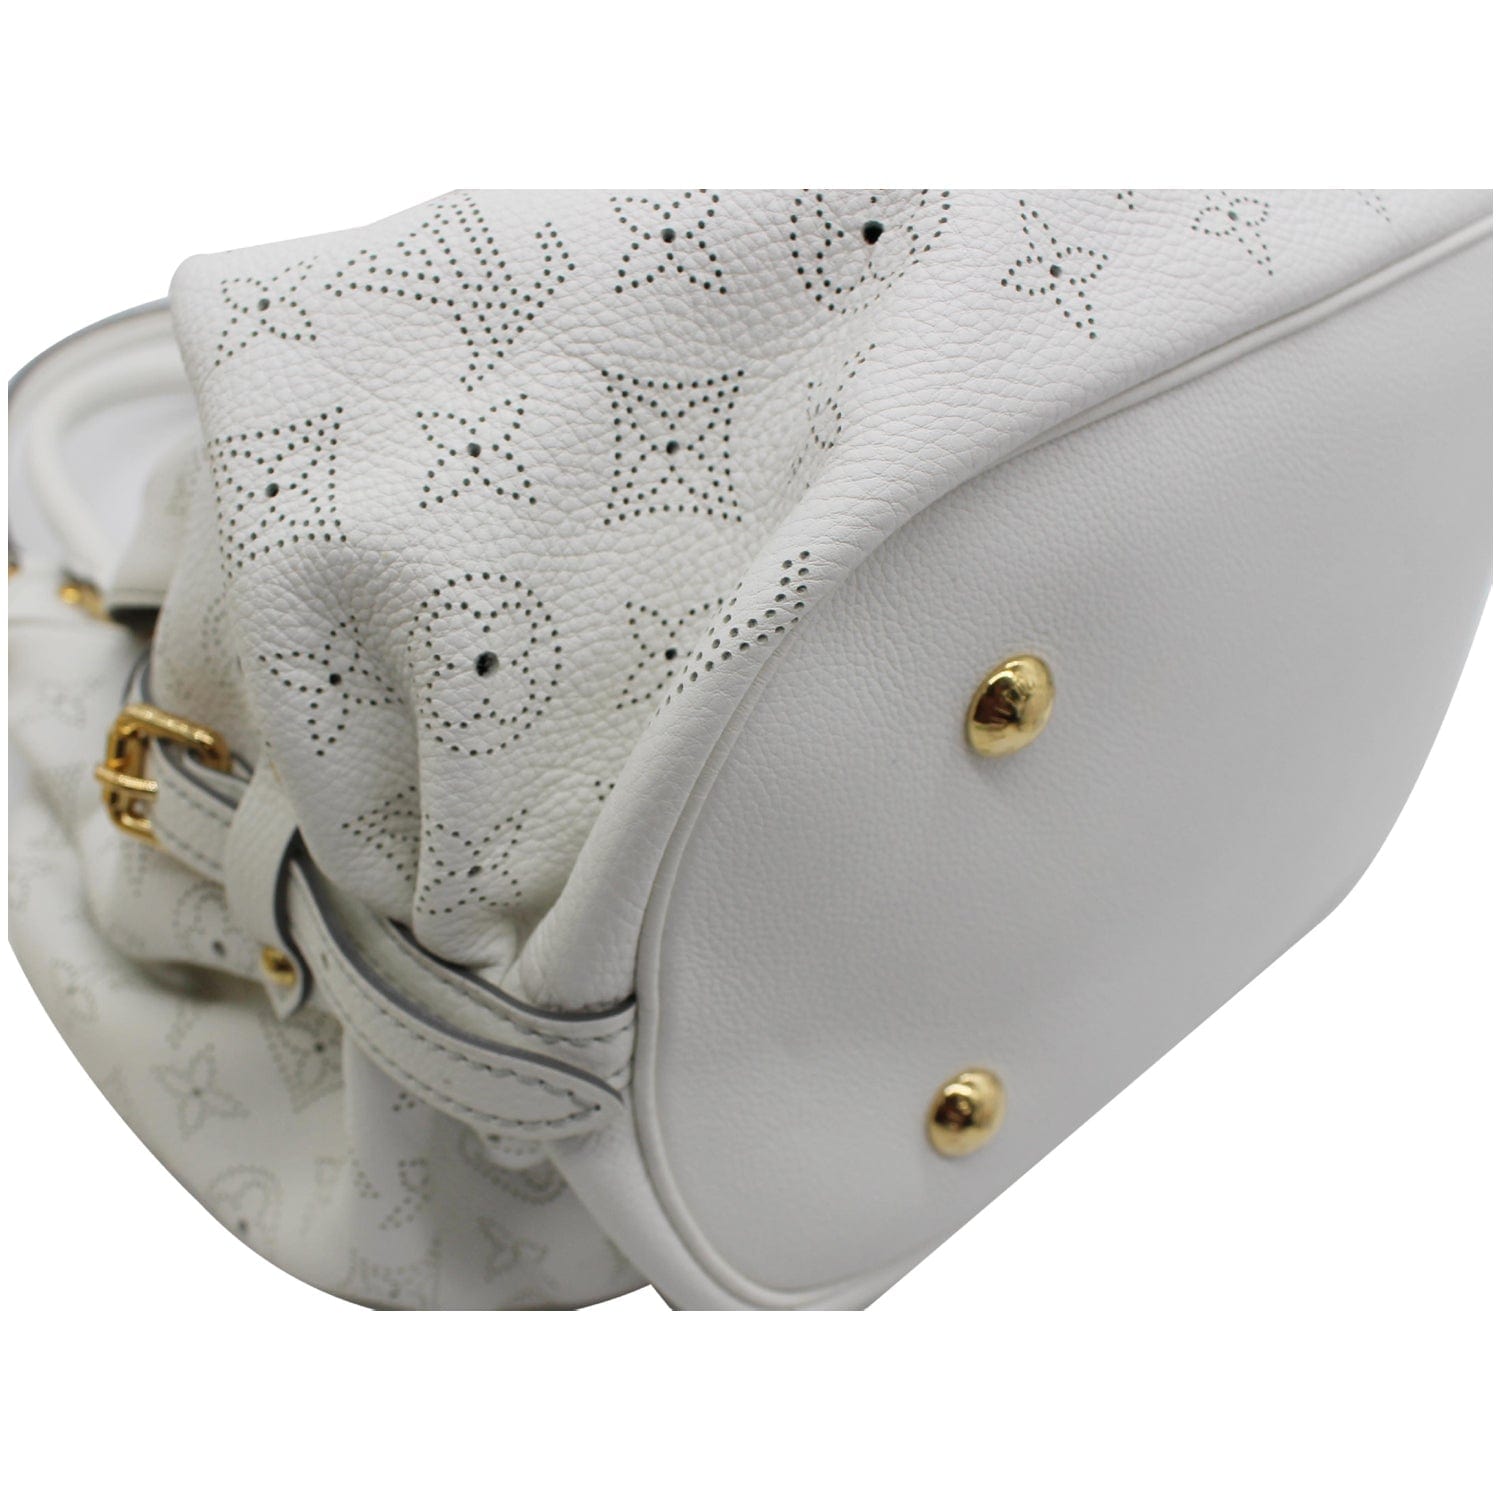 Louis Vuitton White Monogram Mahina Leather XL Bag Louis Vuitton